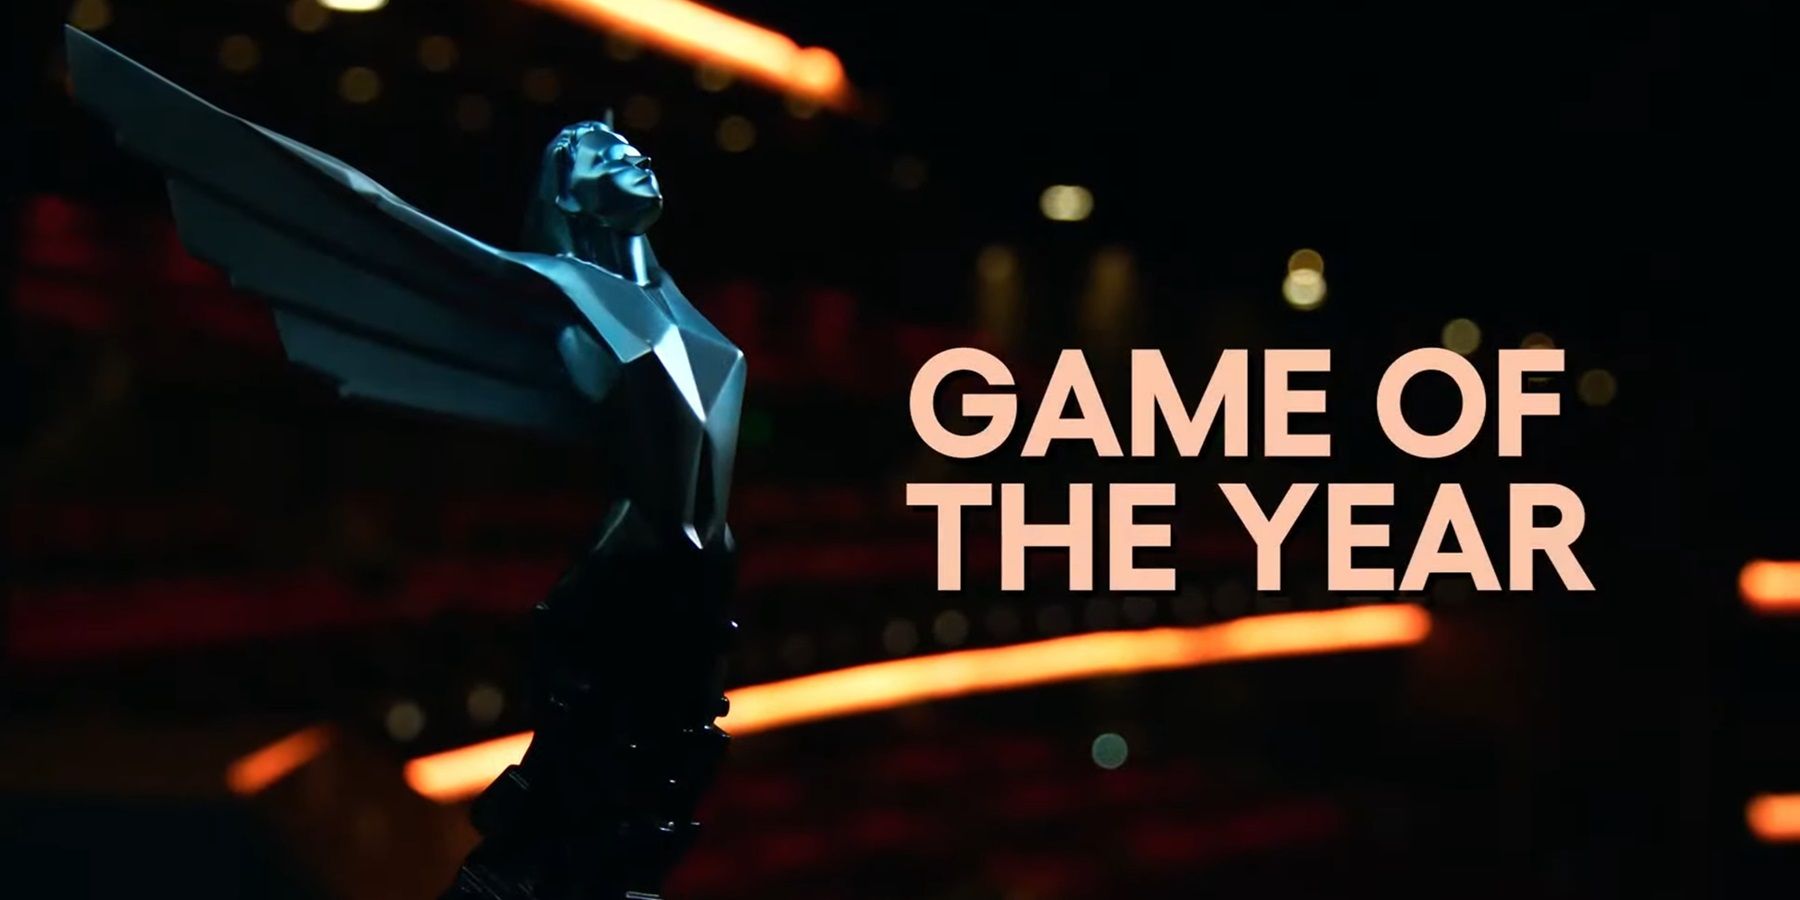 The Game Awards 2023: data, horário, indicados e o que esperar